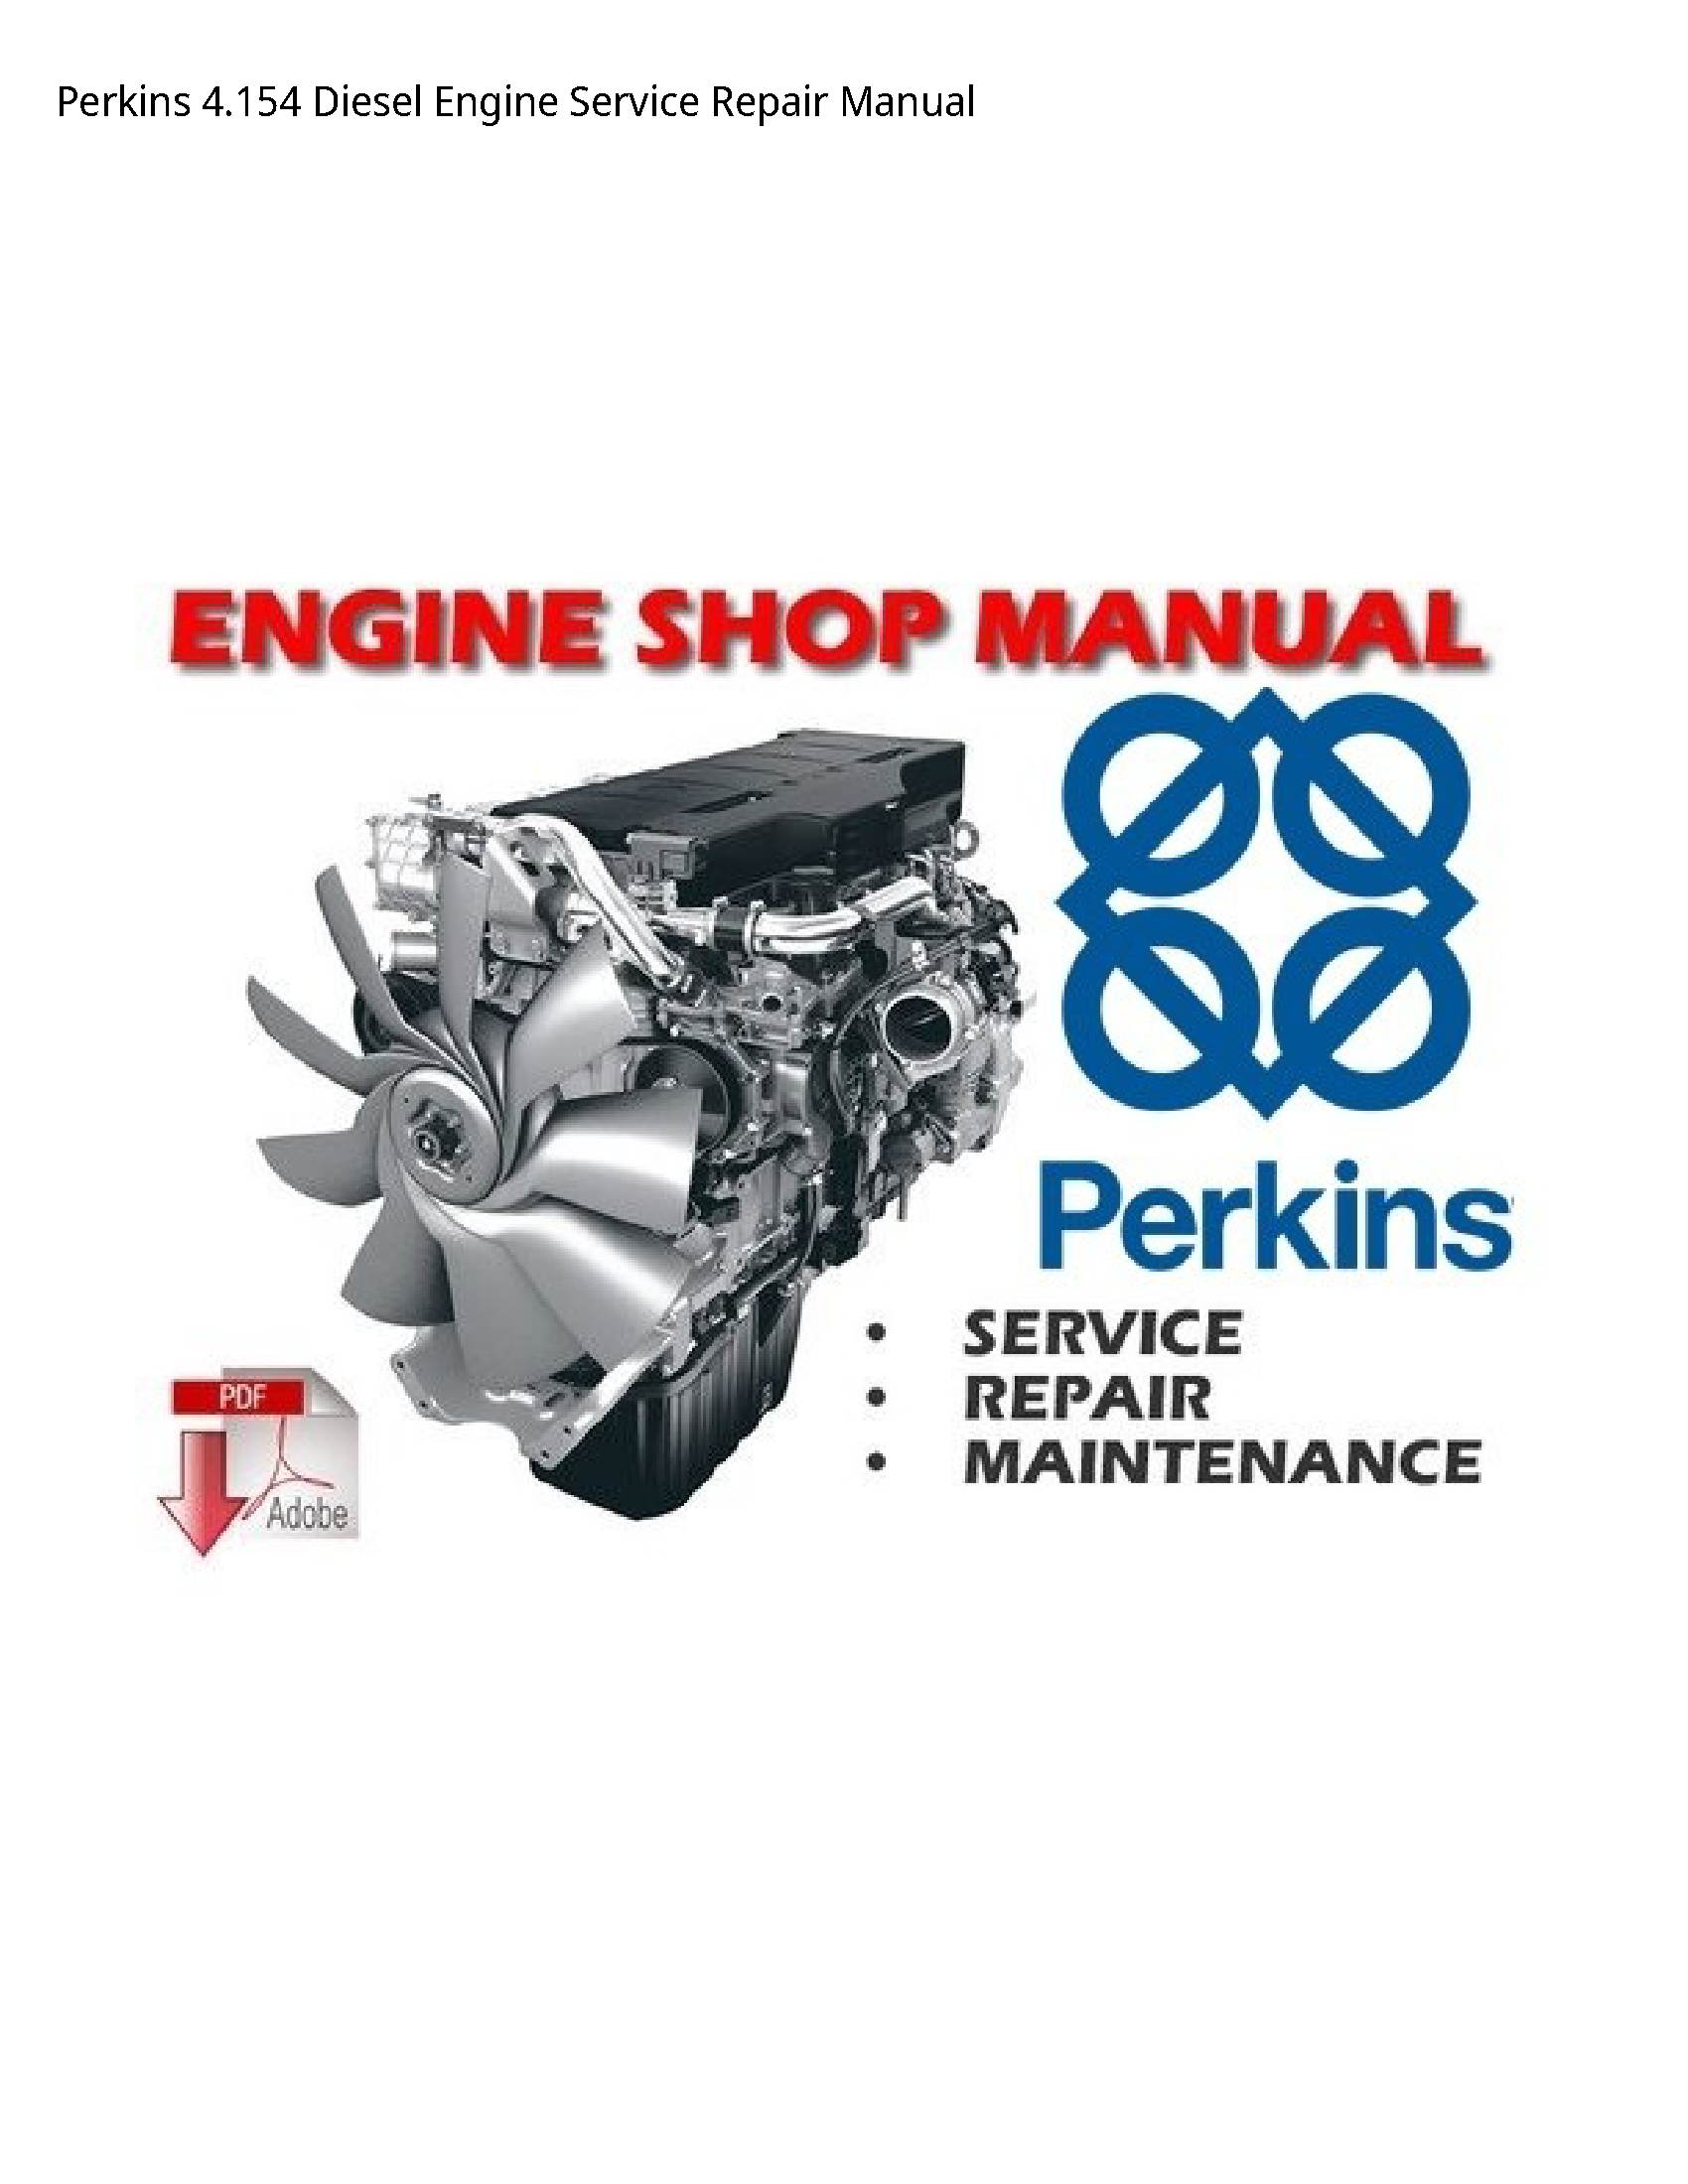 Perkins 4.154 Diesel Engine manual